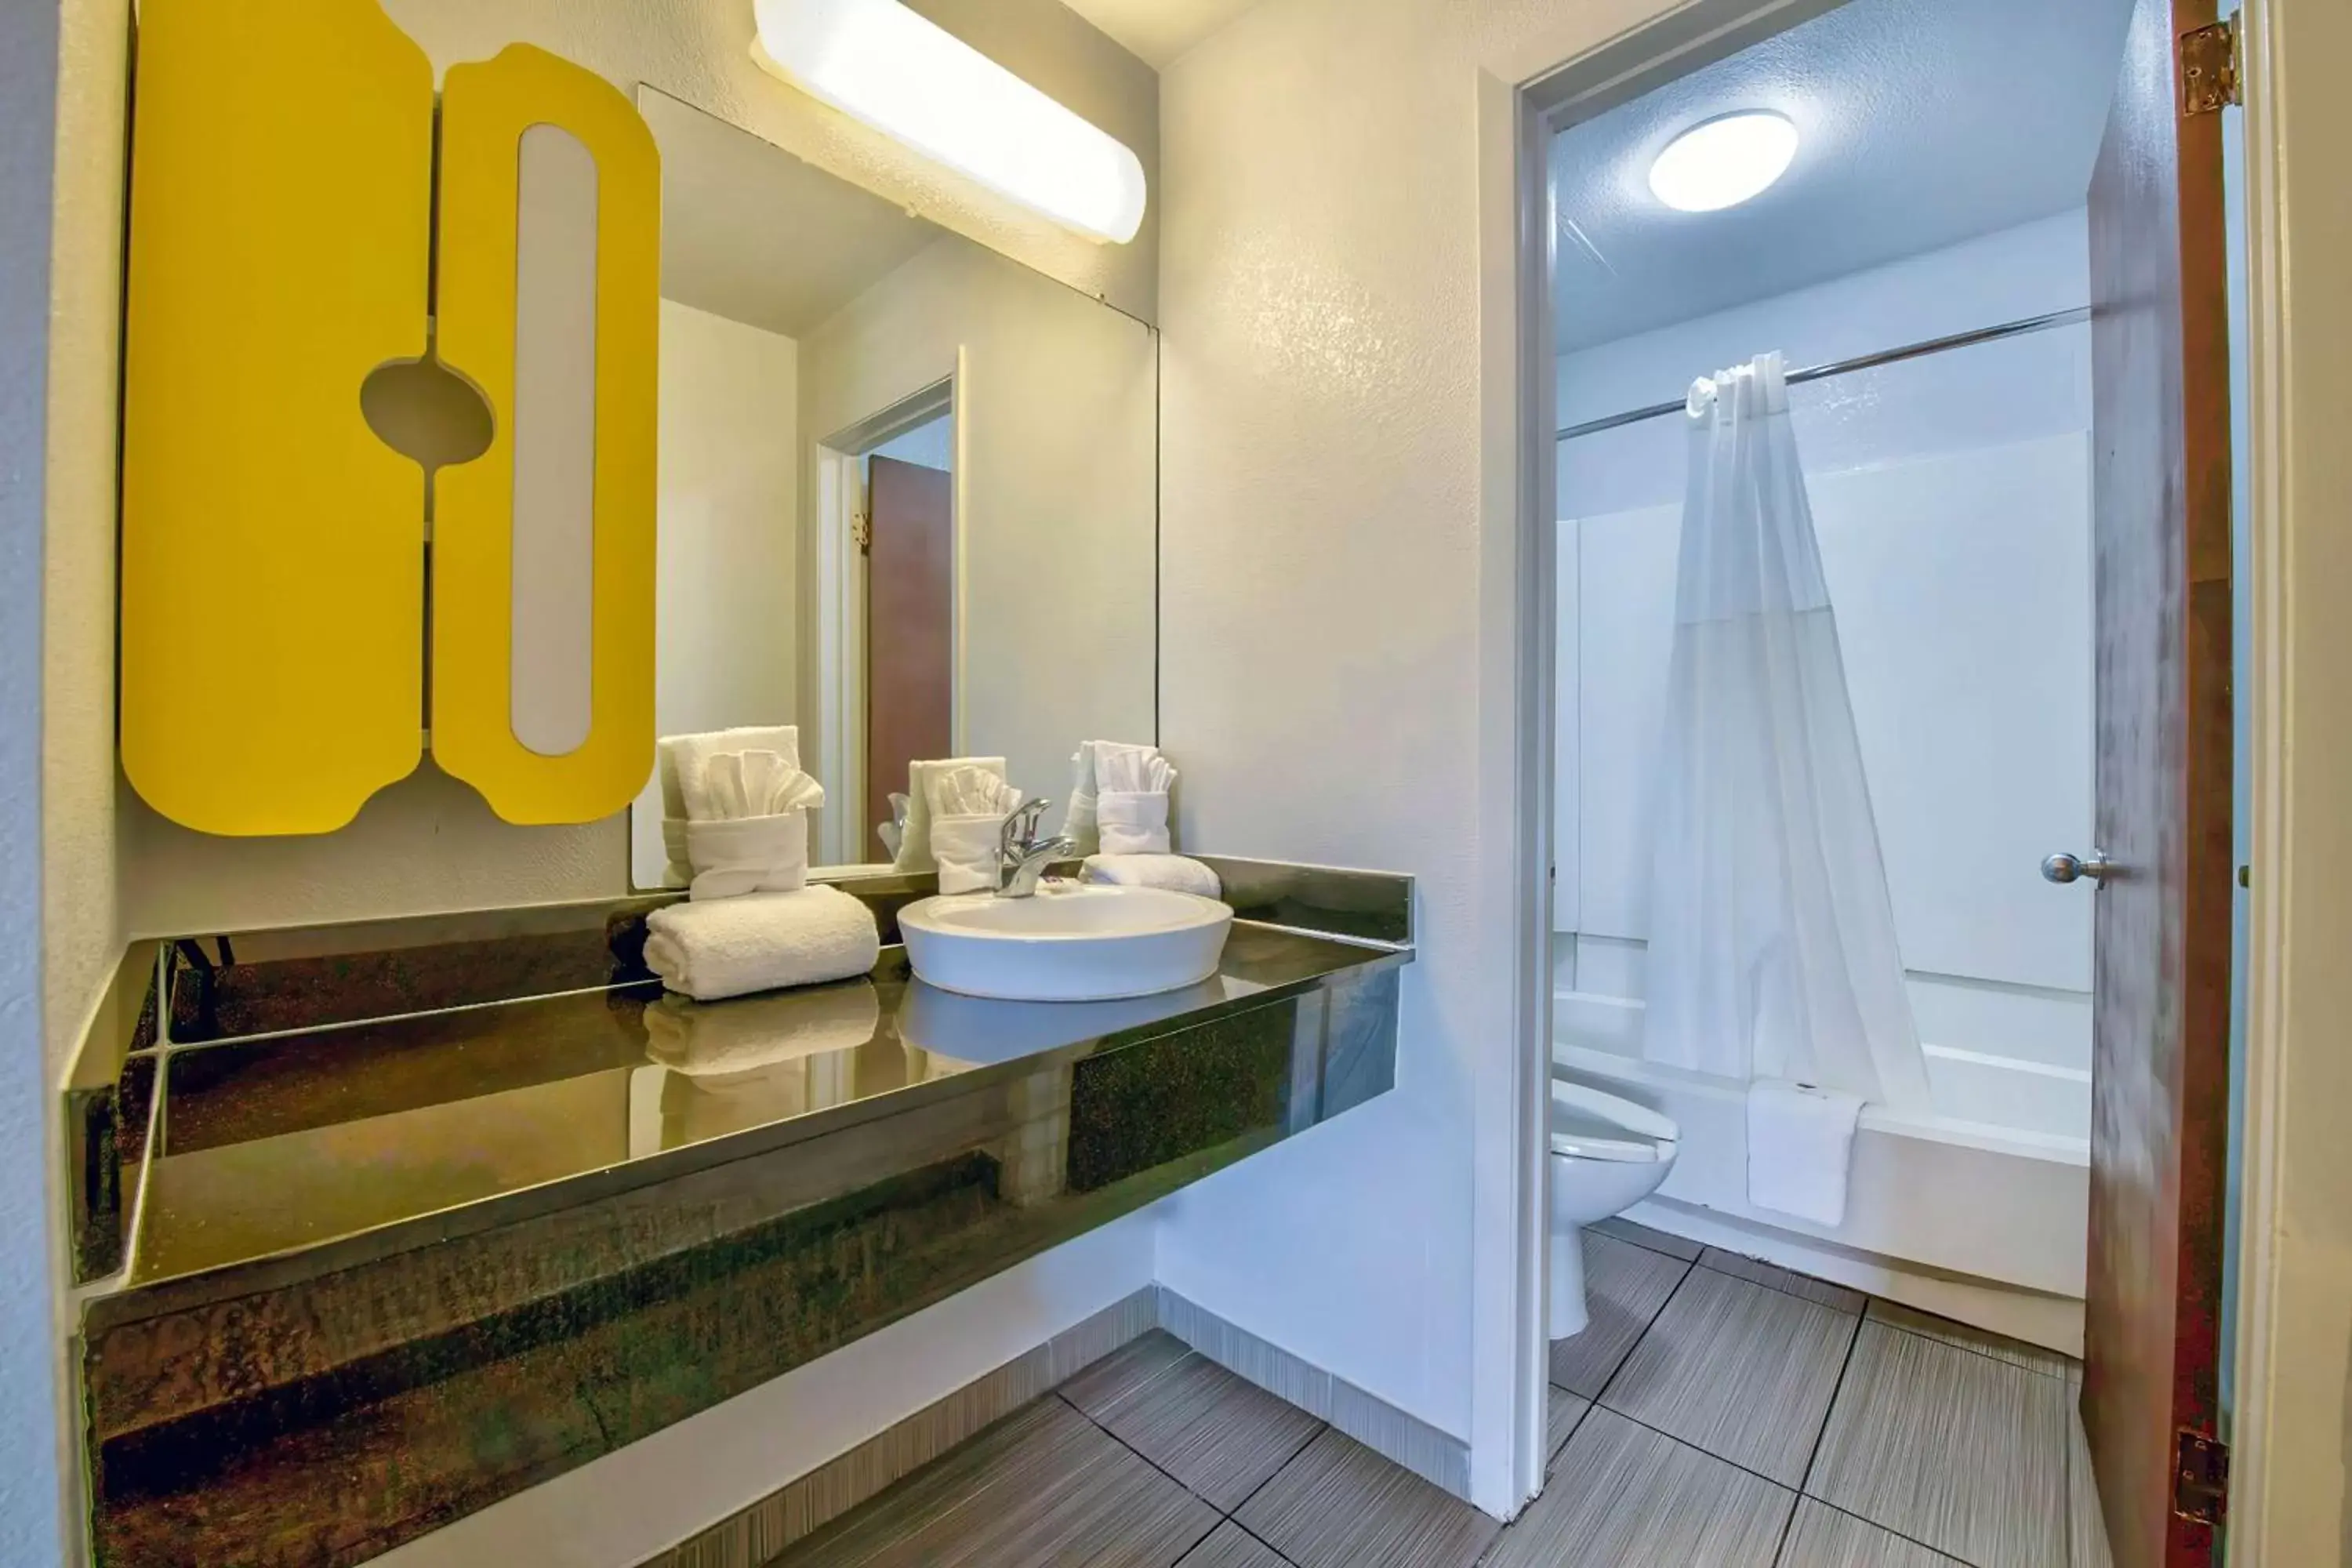 Bedroom, Bathroom in Studio 6-San Antonio, TX - Airport